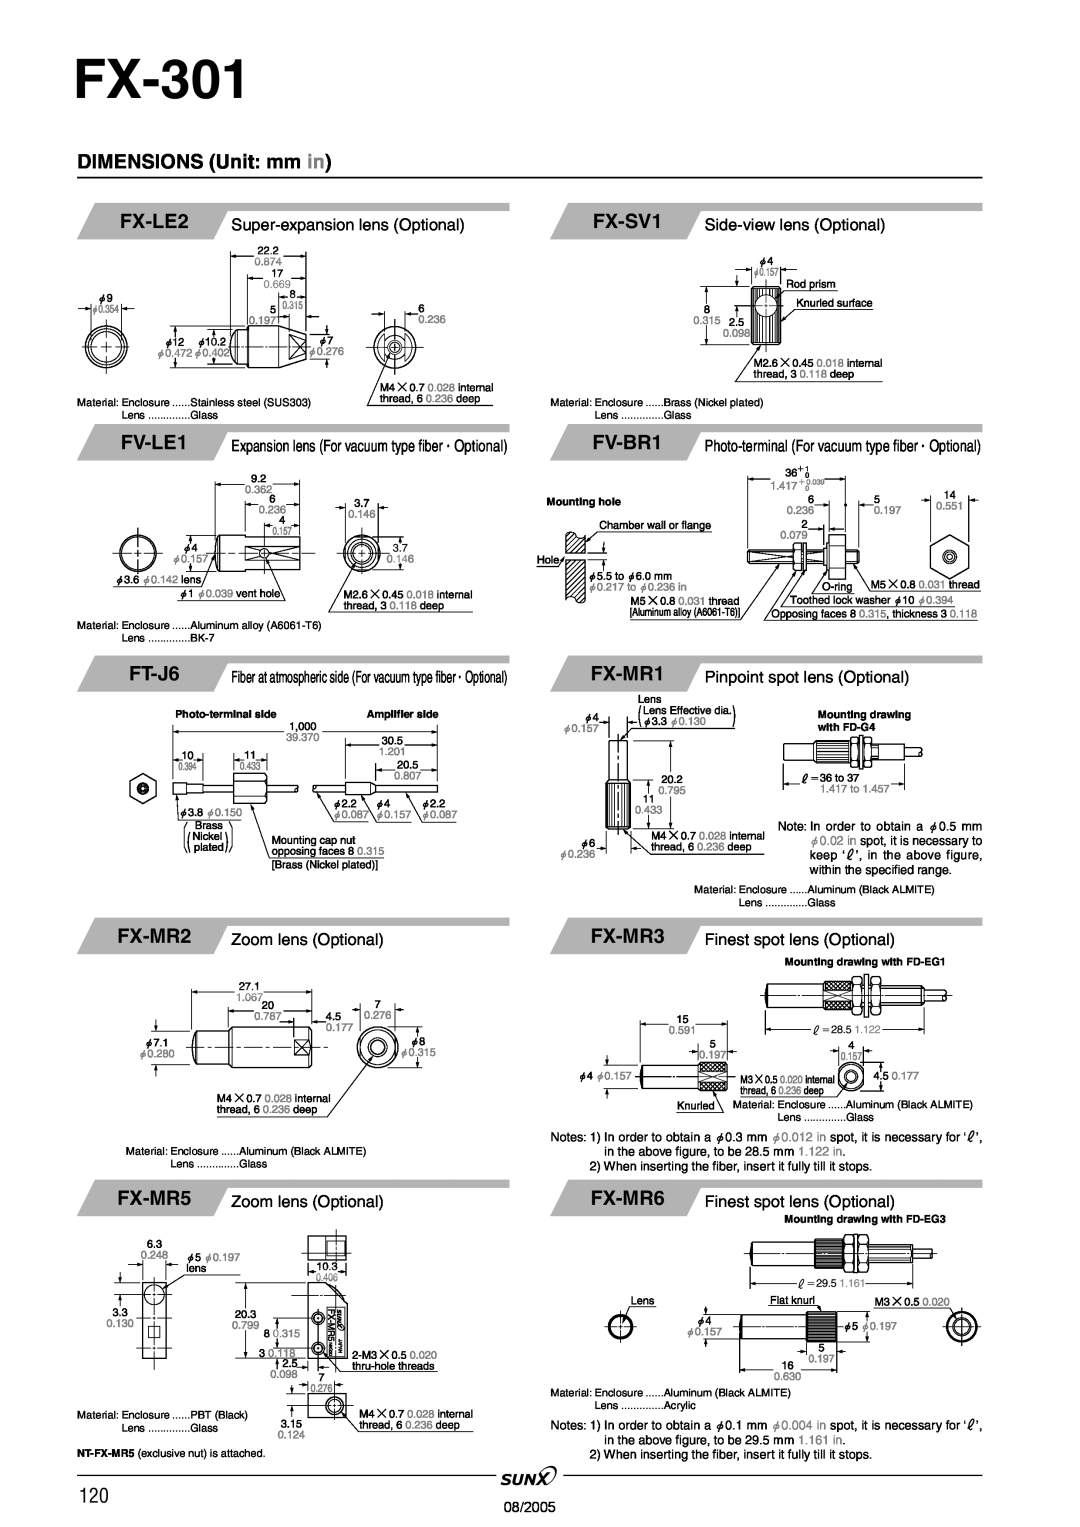 Panasonic FX-301 manual FX-LE2, FV-LE1, FT-J6, FX-SV1, FV-BR1, FX-MR1, FX-MR3, FX-MR6, FX-MR5 Zoom lens Optional, 08/2005 